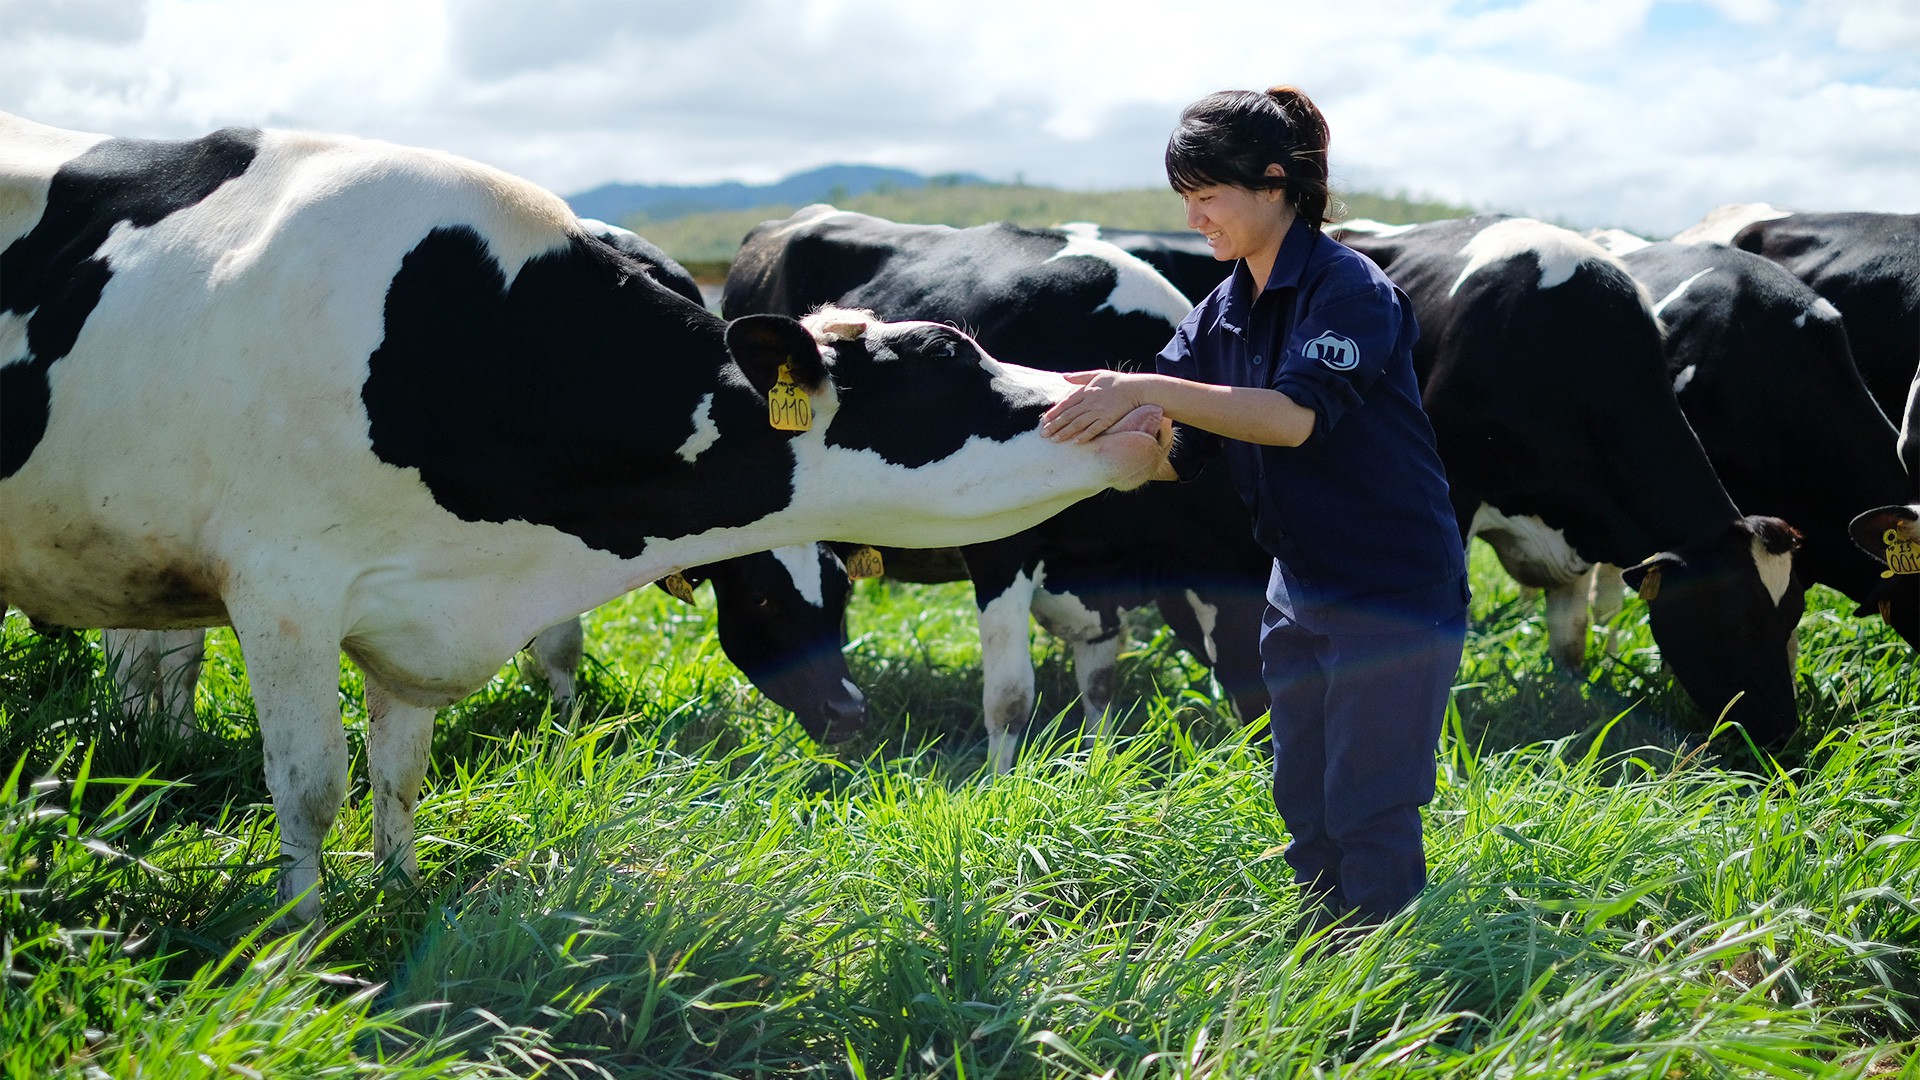 Nuôi dưỡng bò sữa đúng kỹ thuật là tạo điều kiện thuận lợi cho cơ quan tiêu hóa phát triển ổn định